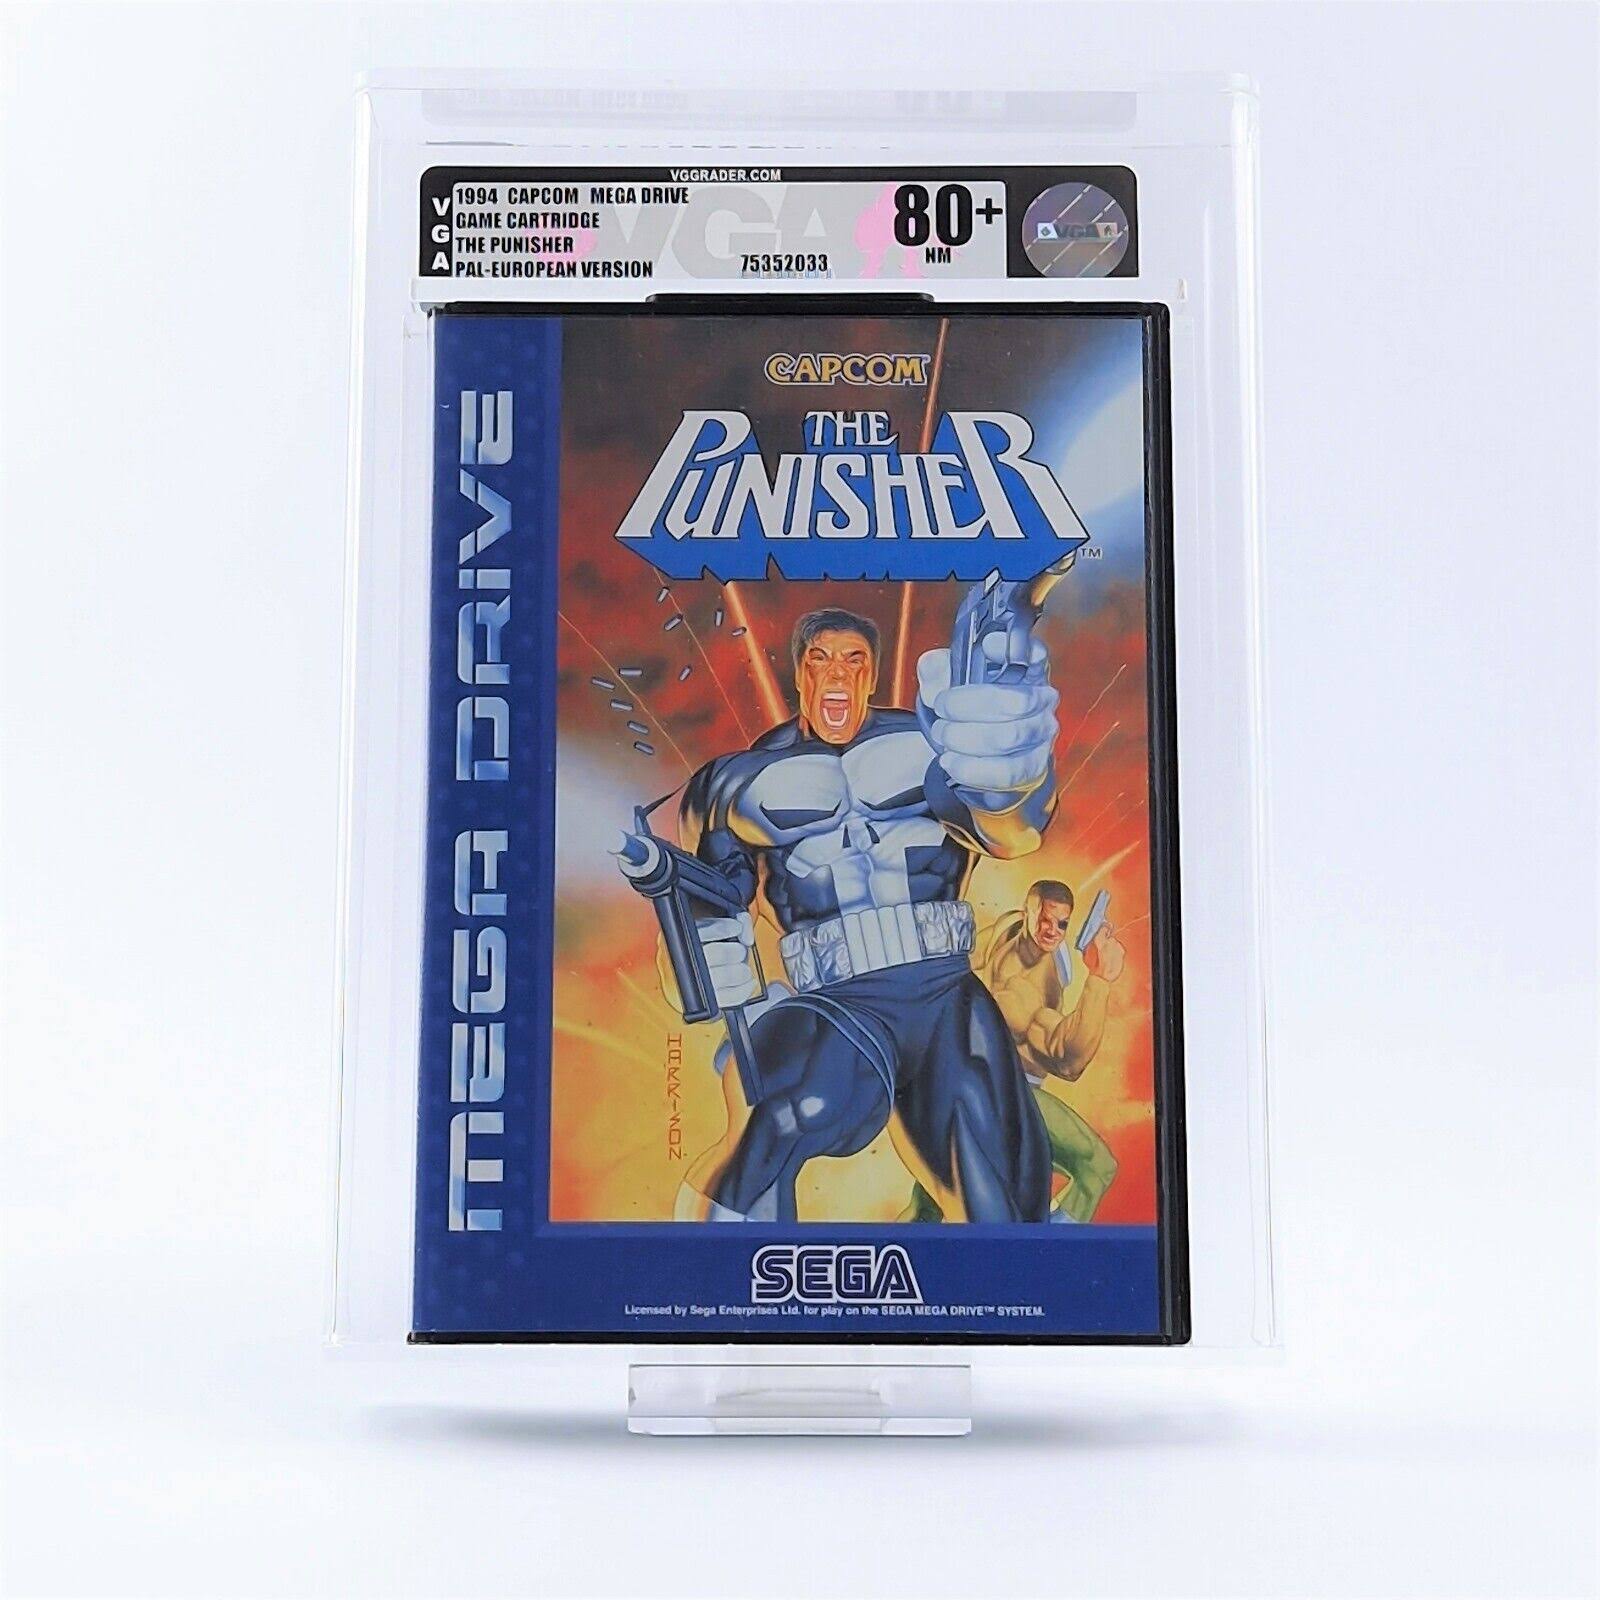 The Punisher - Sega Genesis